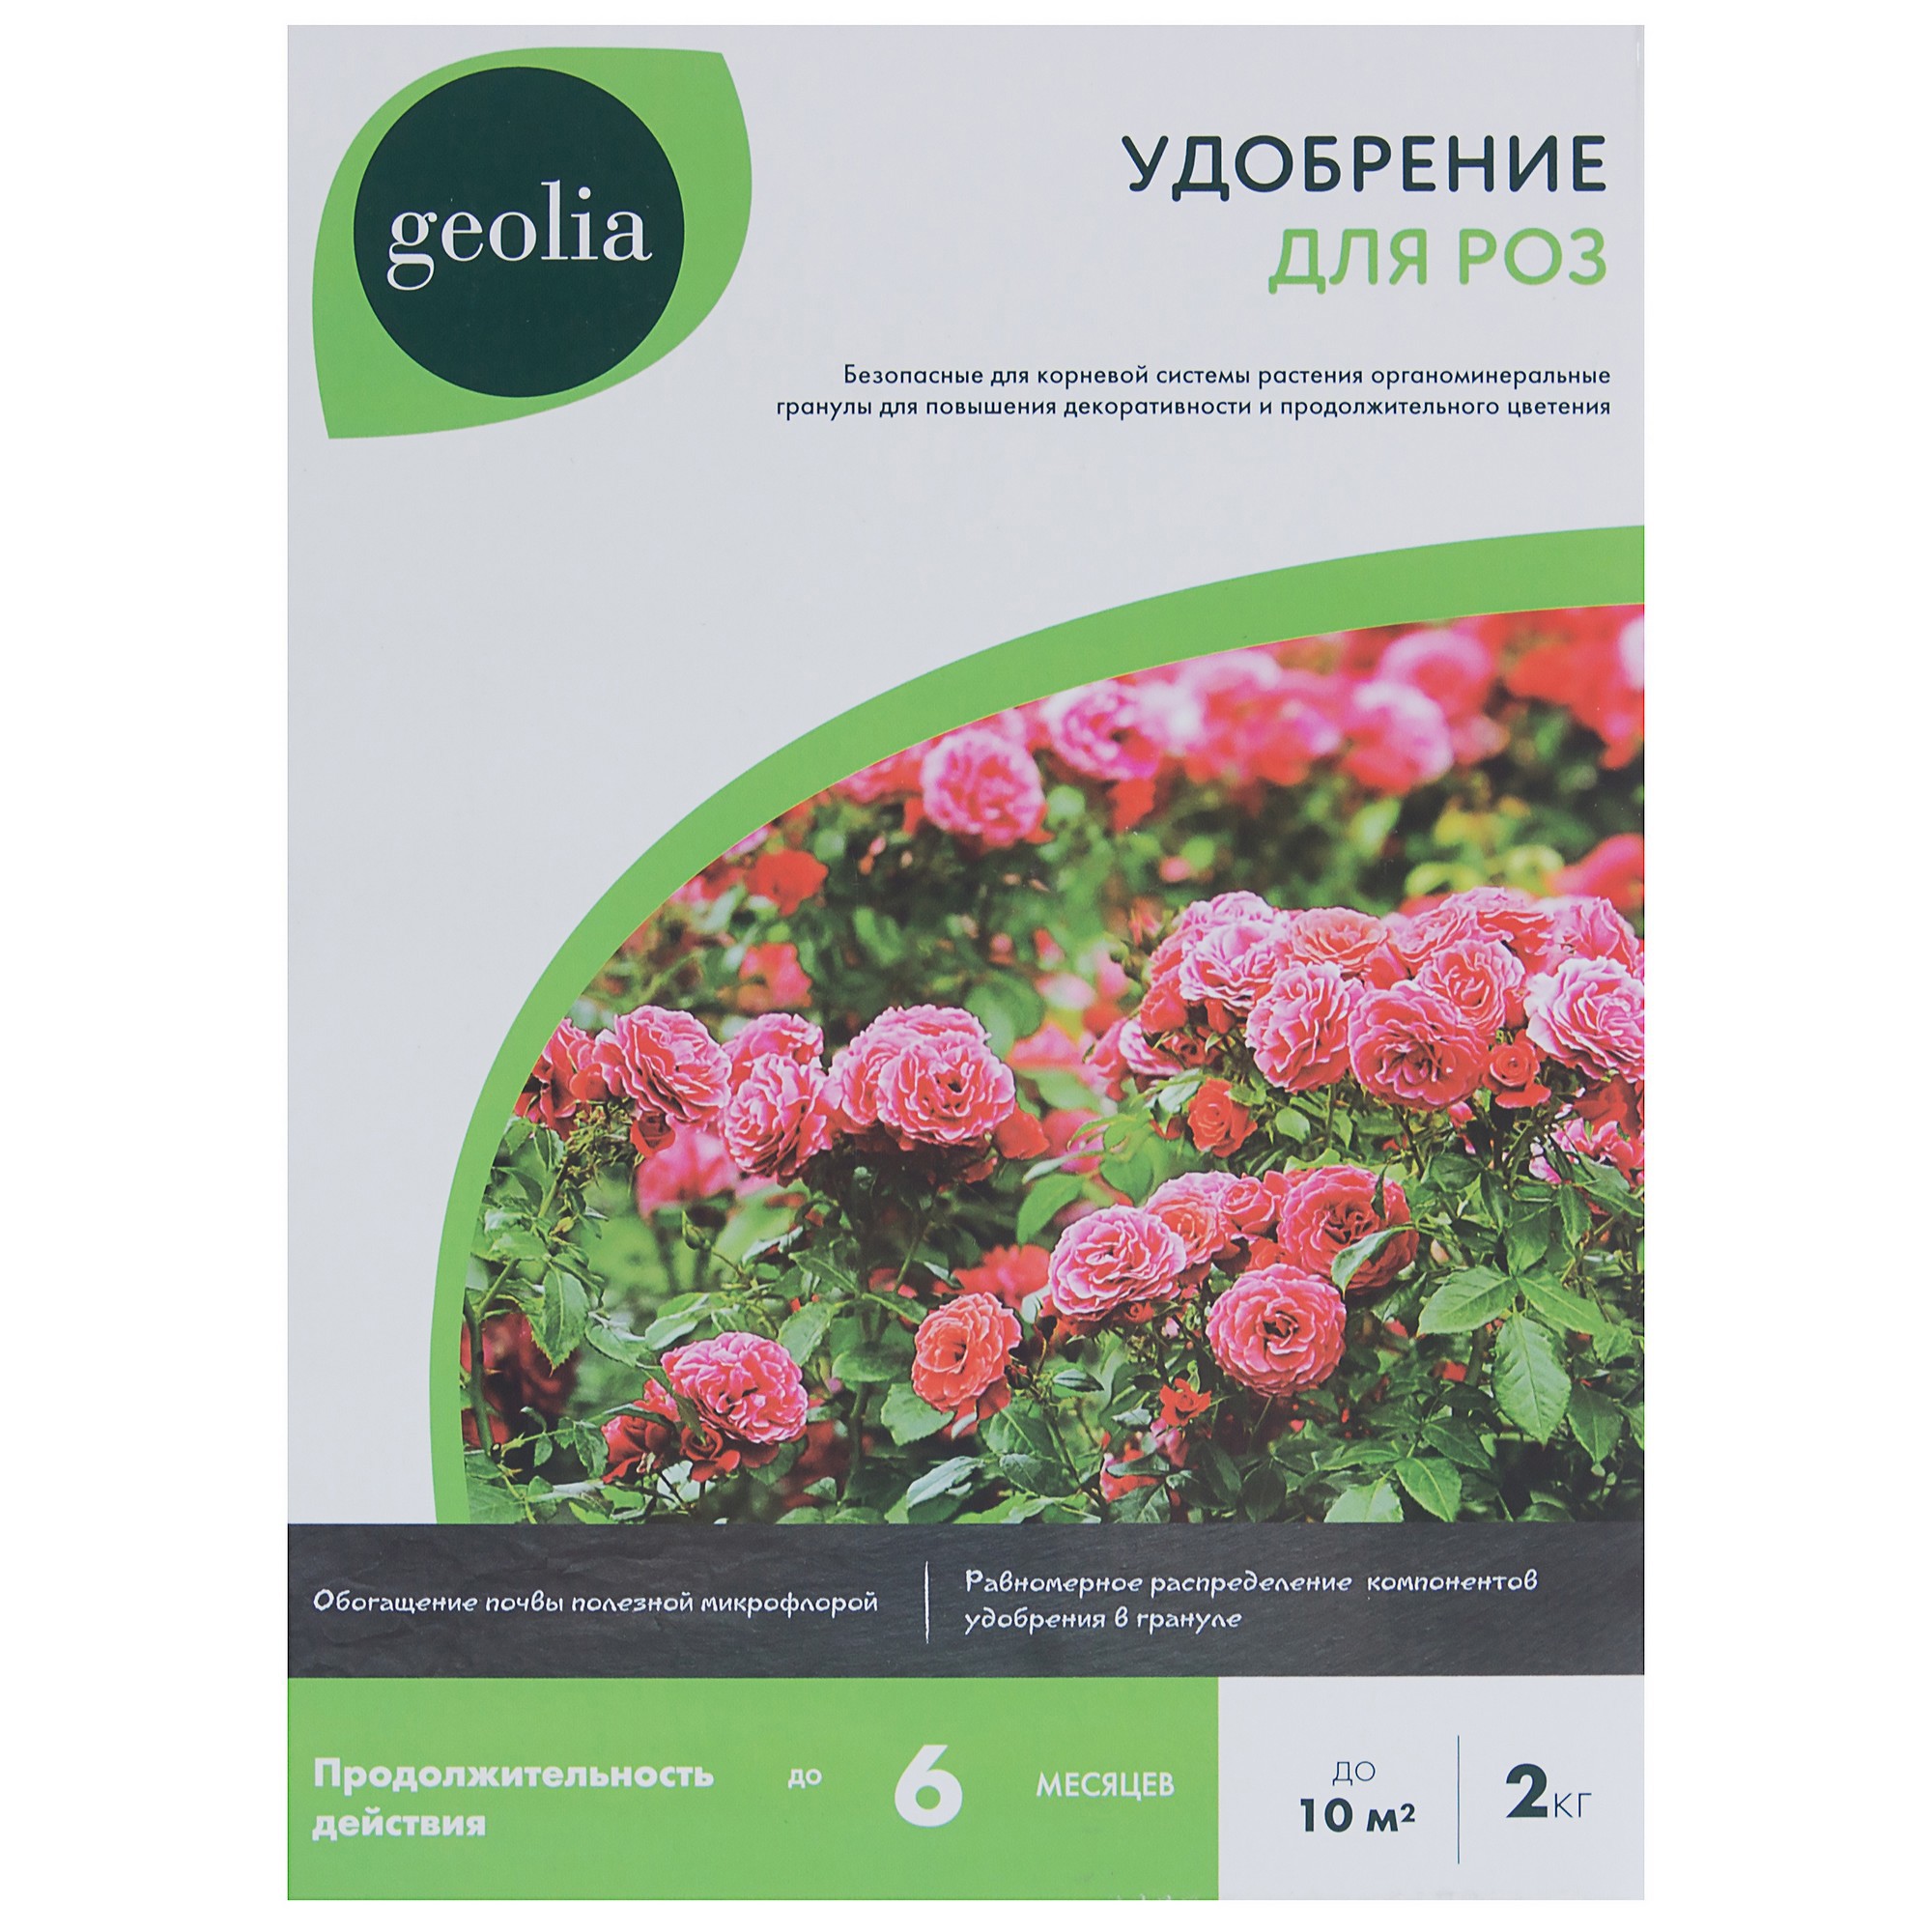 Удобрение Geolia органоминеральное для роз 2 кг в Москве – купить по низкойцене в интернет-магазине Леруа Мерлен